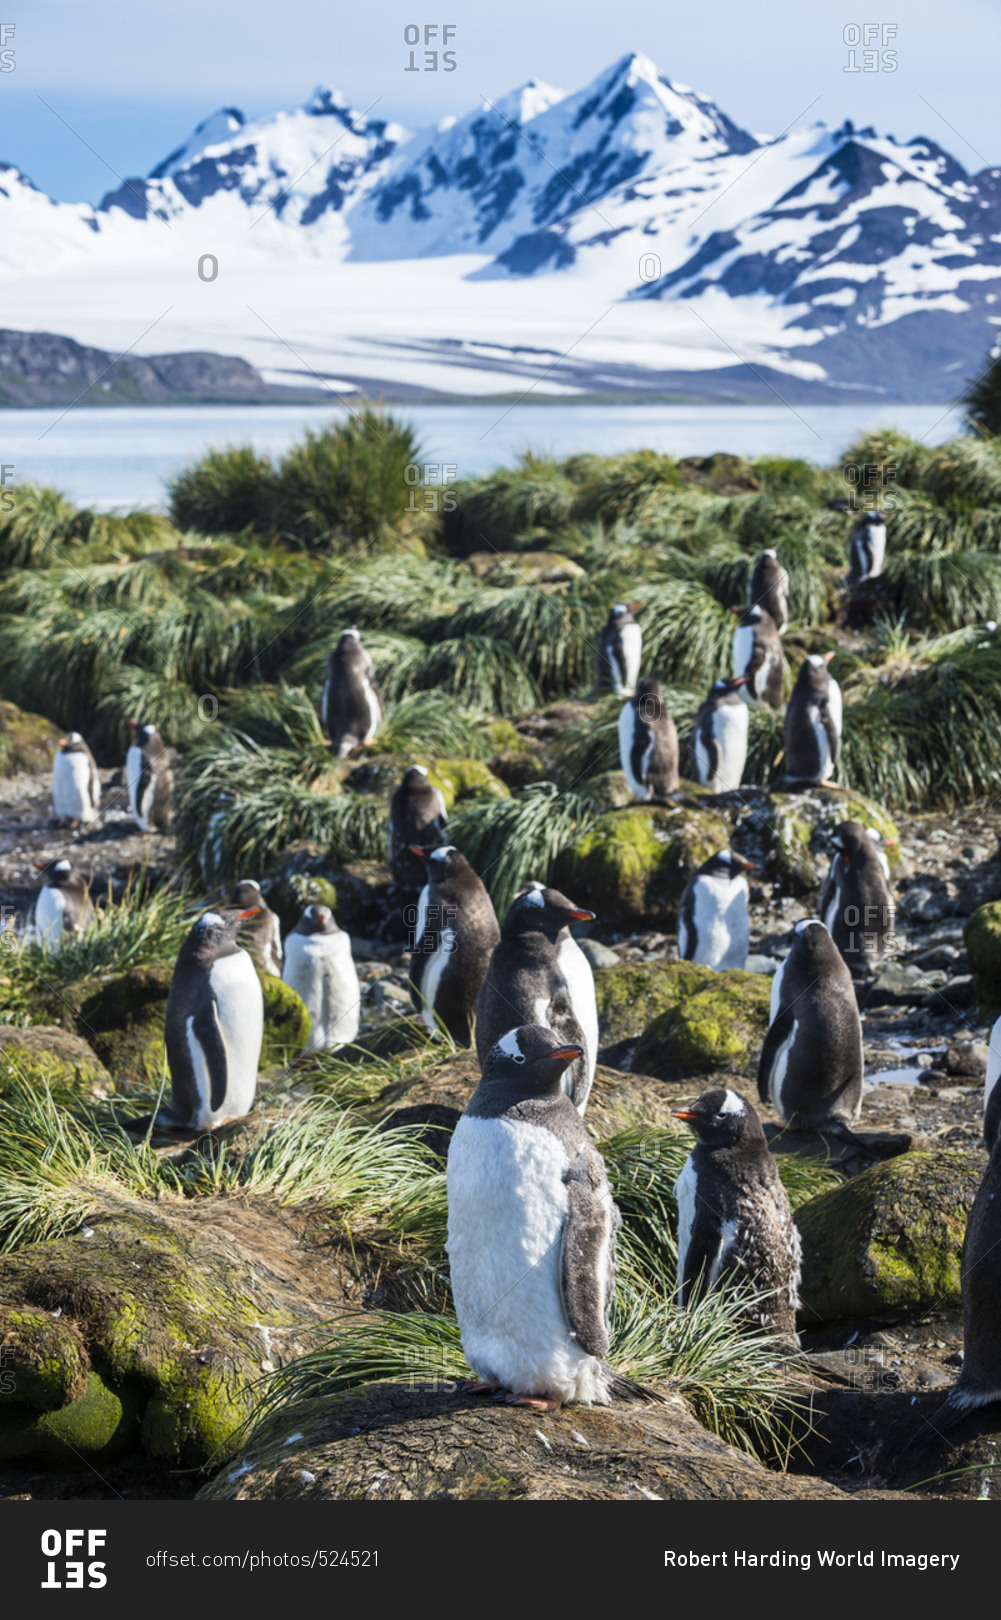 Gentoo penguins (Pygoscelis papua) colony, Prion Island, South Georgia, Antarctica, Polar Regions